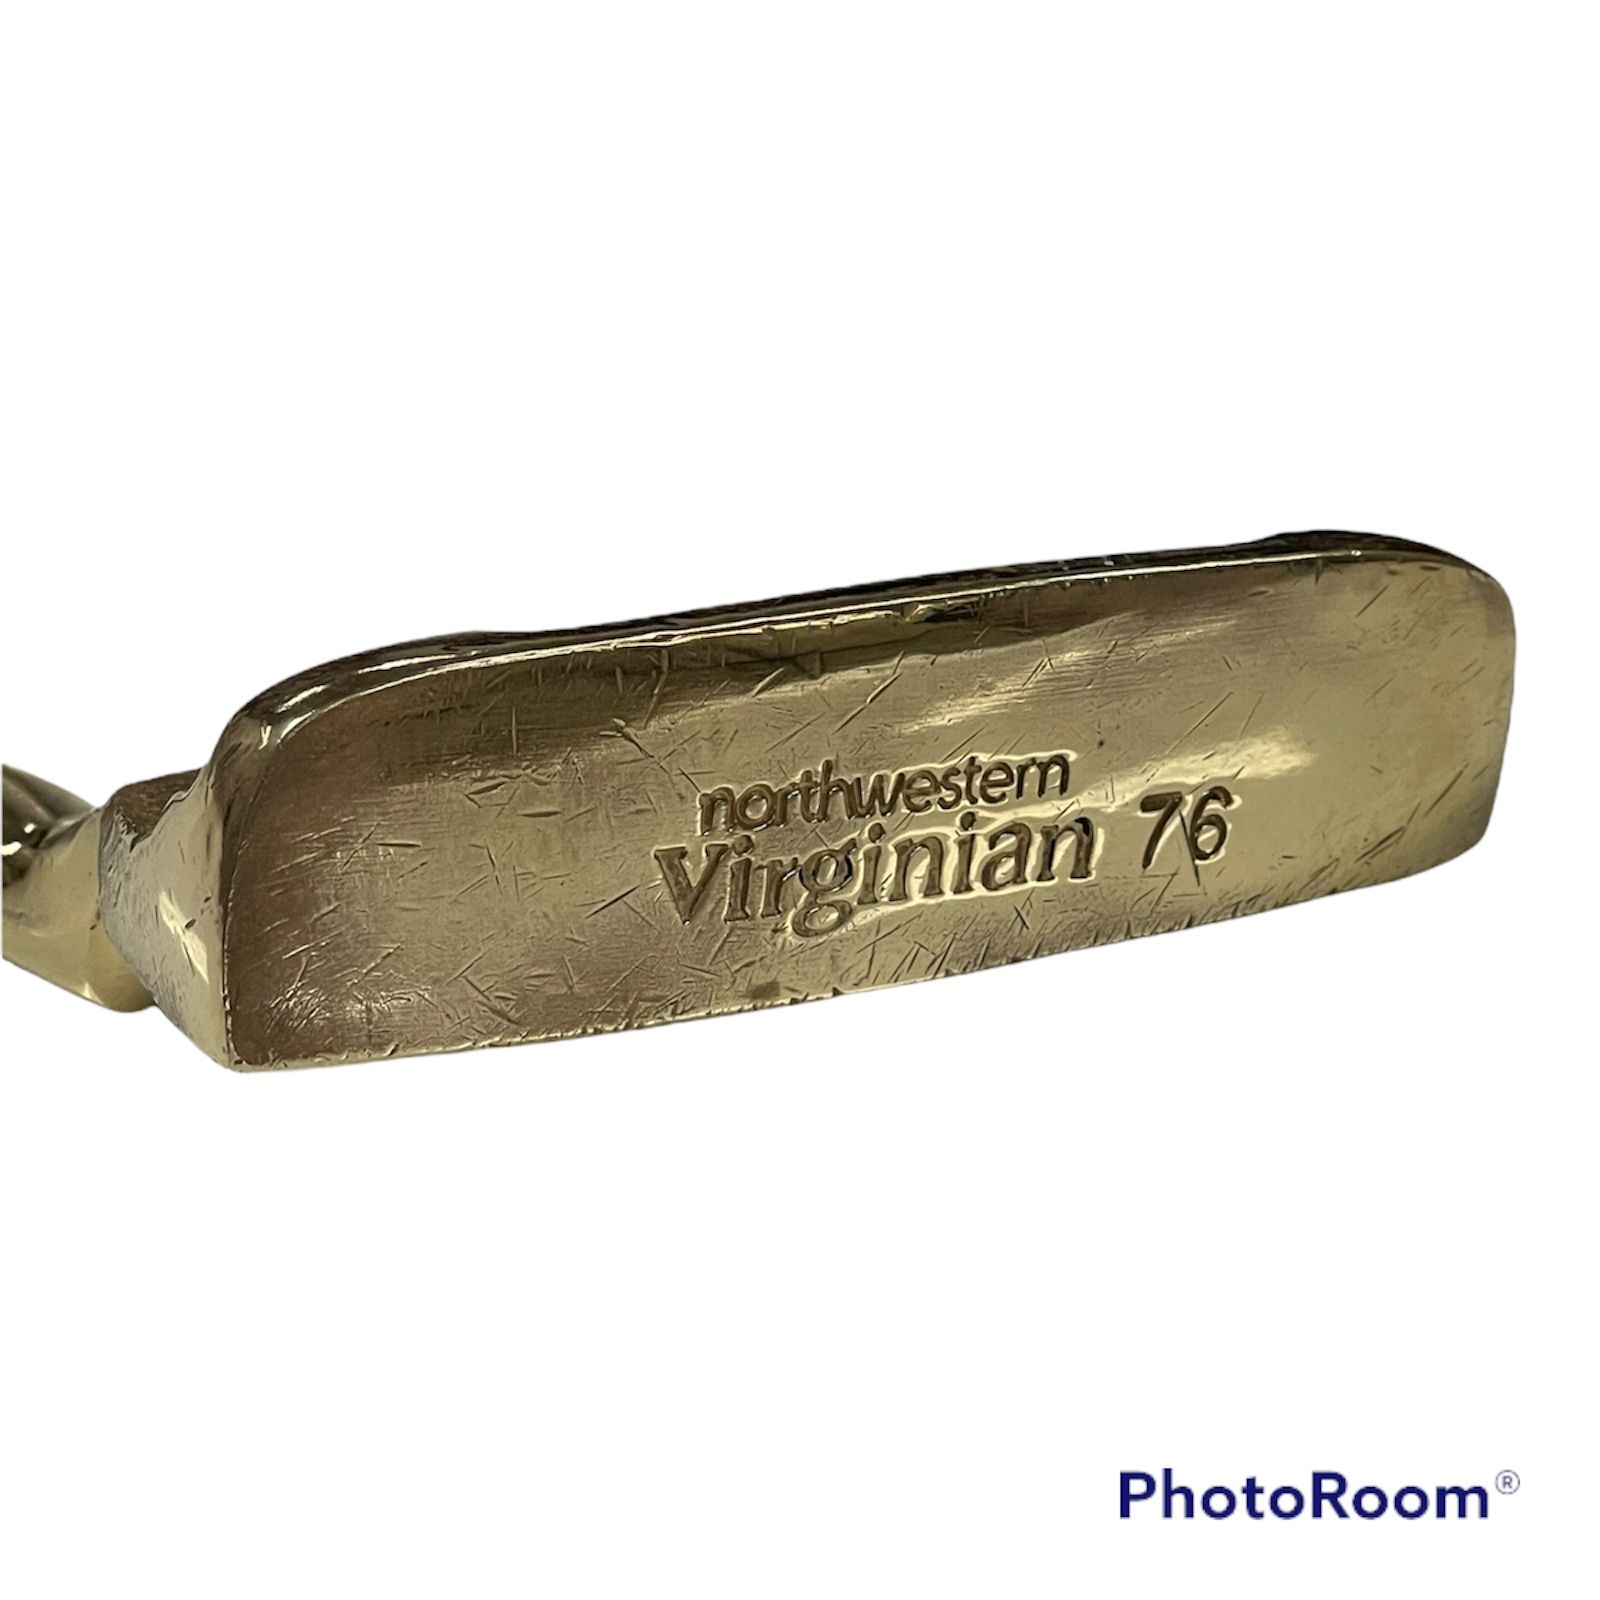 Northwestern Virginian 76 Brass Putter